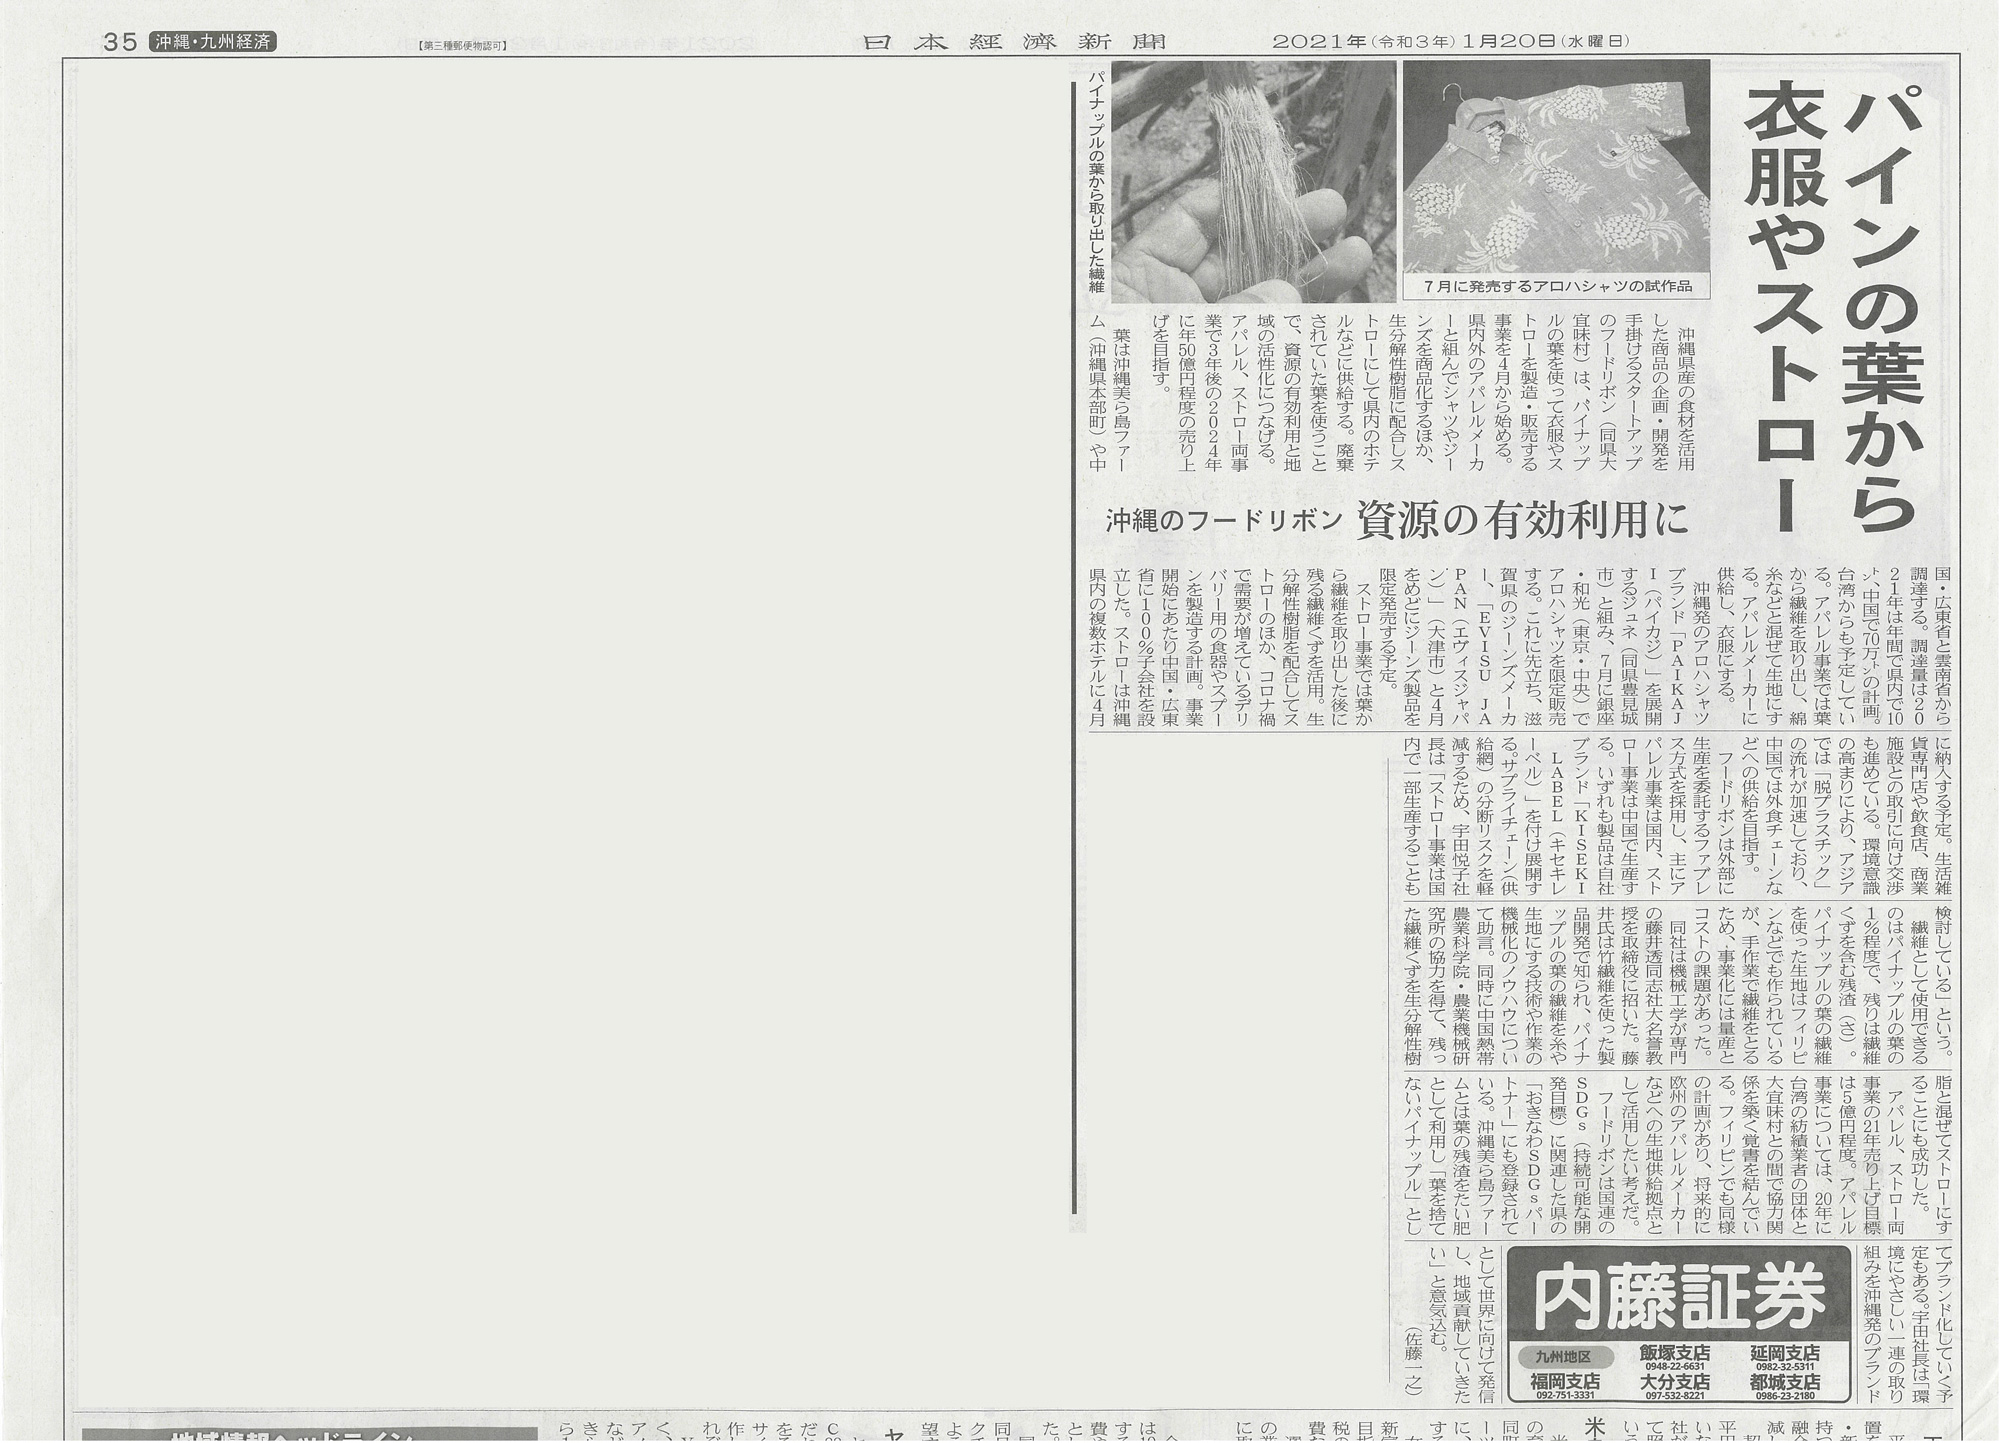 パイナップルの活用について日本経済新聞に掲載されました